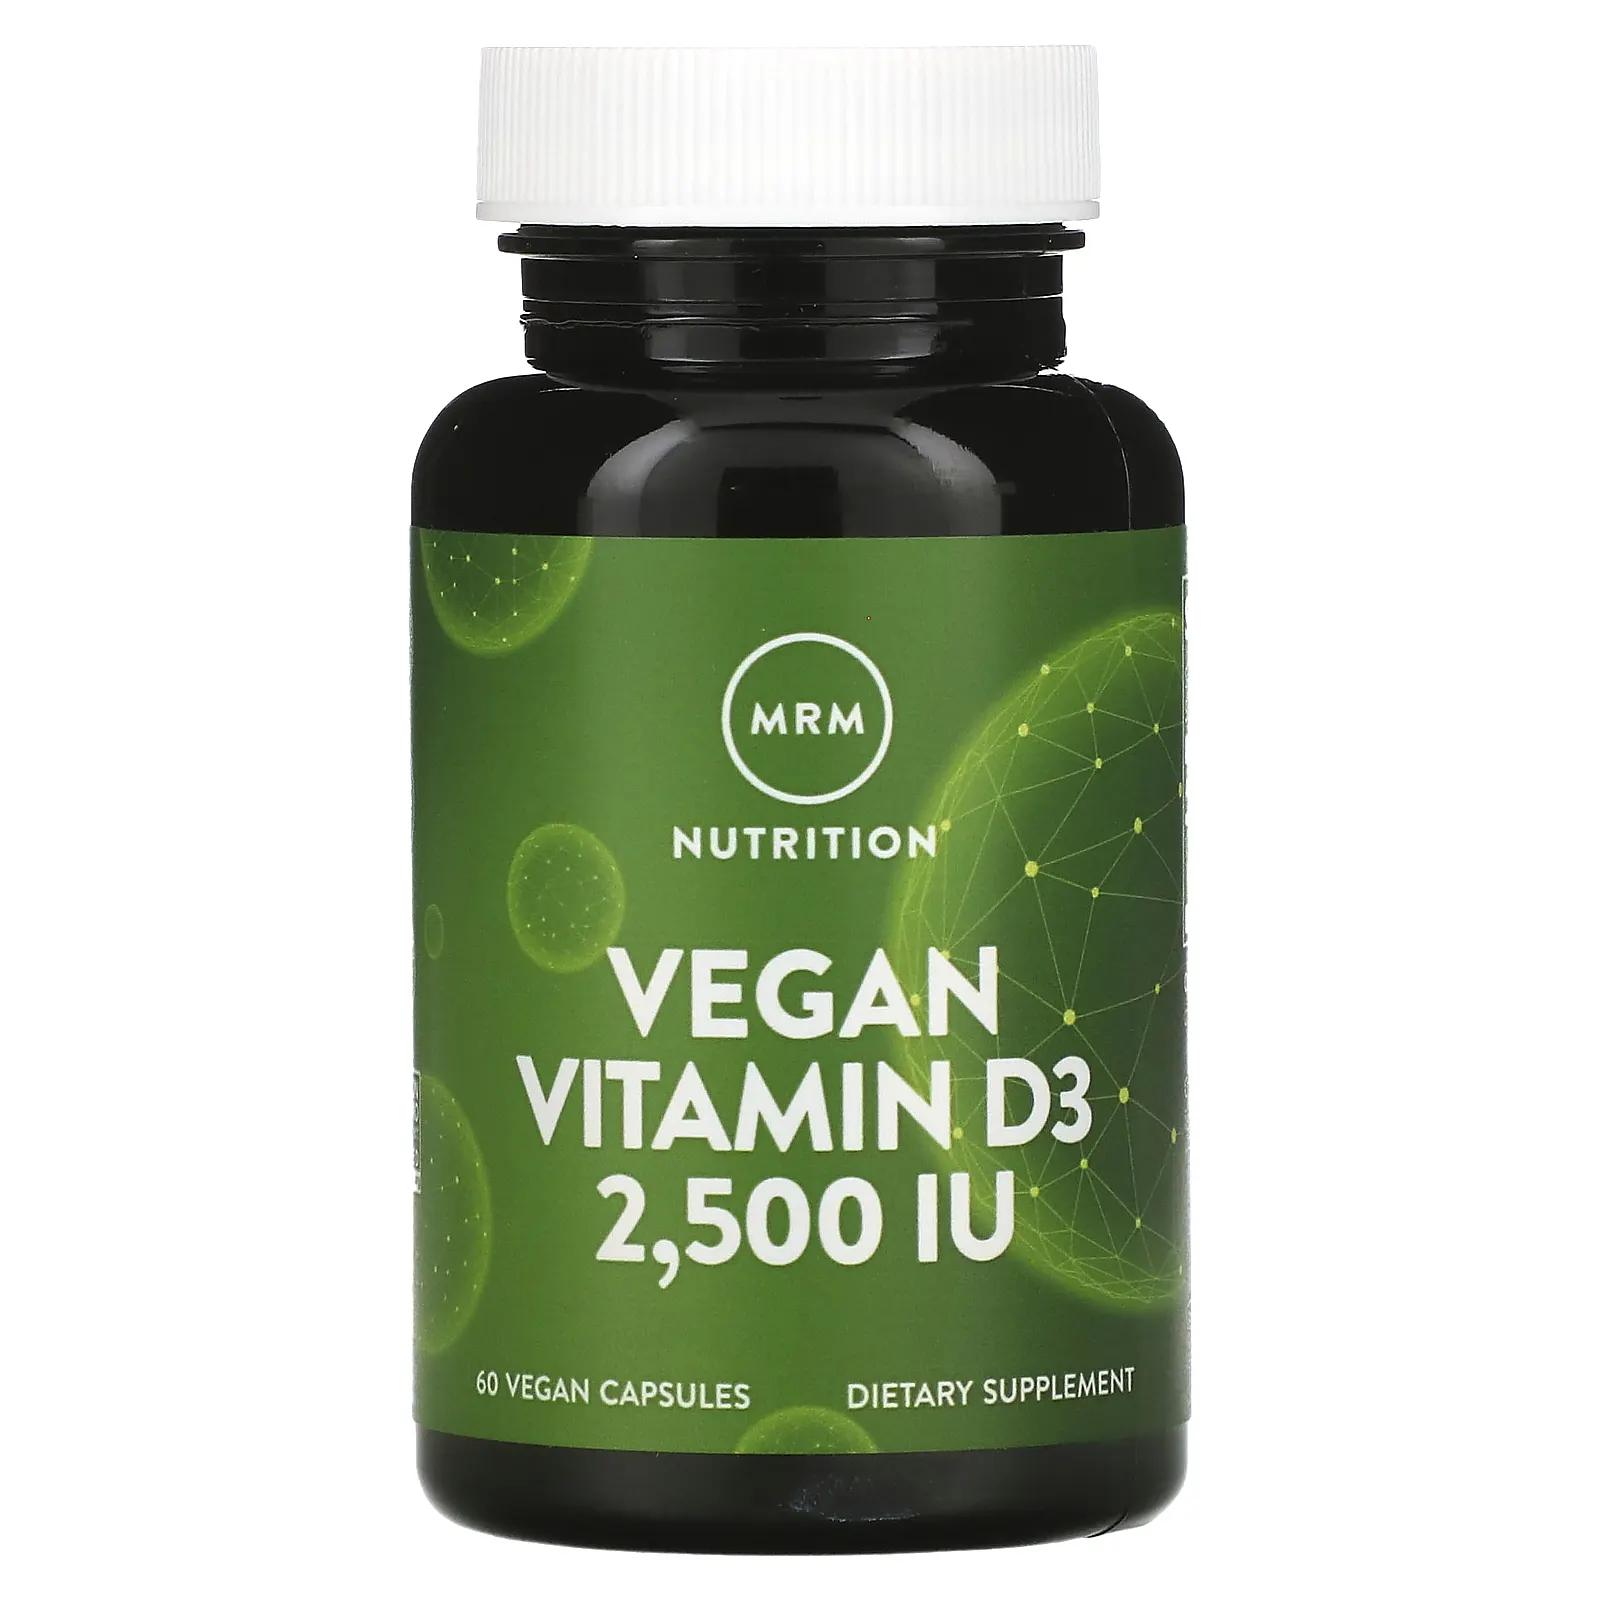 mrm nutrition витамин d3 для веганов 2500 ме 60 веганских капсул MRM Веганский витамин D3 2500 МЕ 60 веганских капул